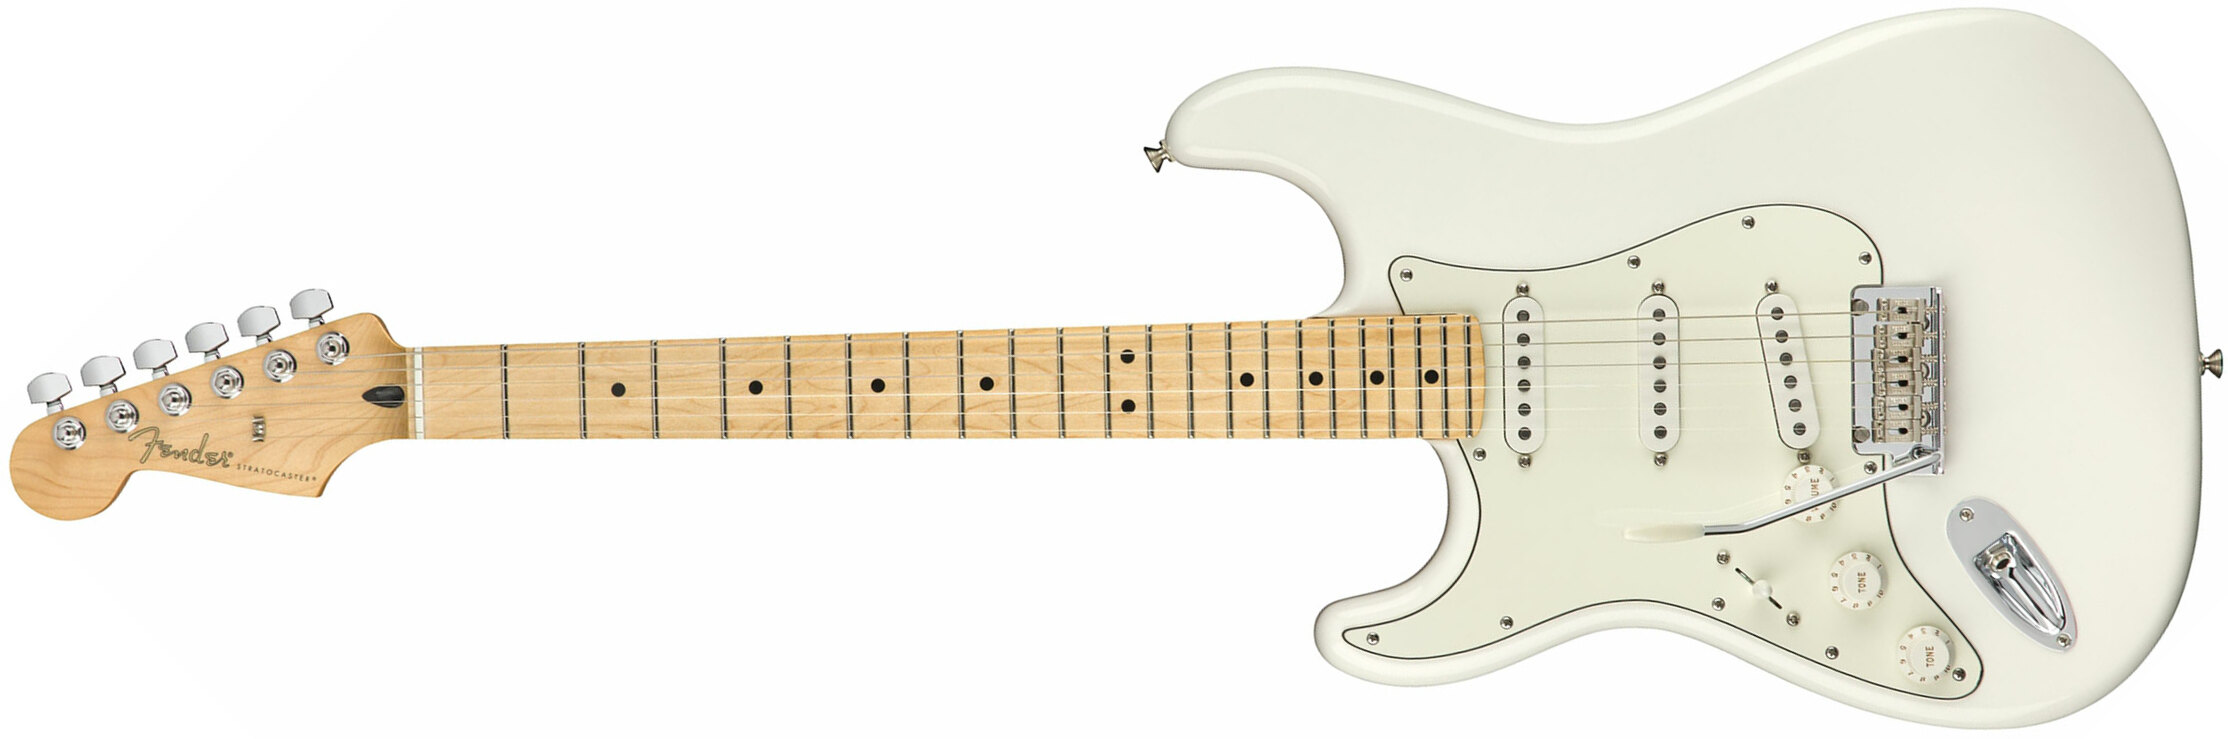 Fender Strat Player Lh Gaucher Mex Sss Mn - Polar White - Linkshandige elektrische gitaar - Main picture